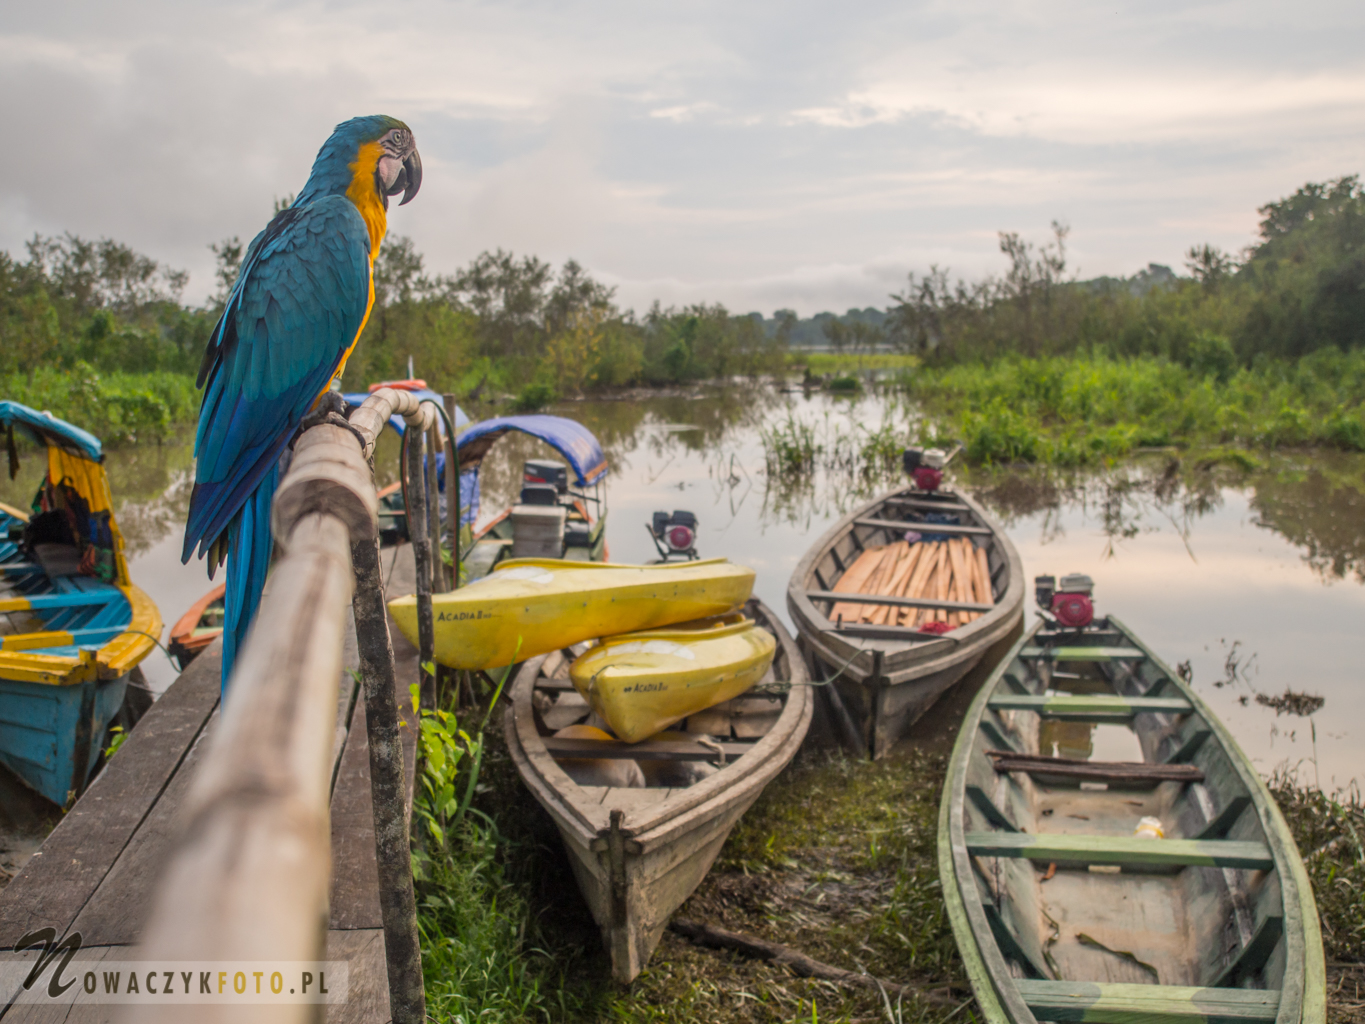 Papuga ara siedzi na barierce i patrzy na dżunglę i rzekę z łódkami